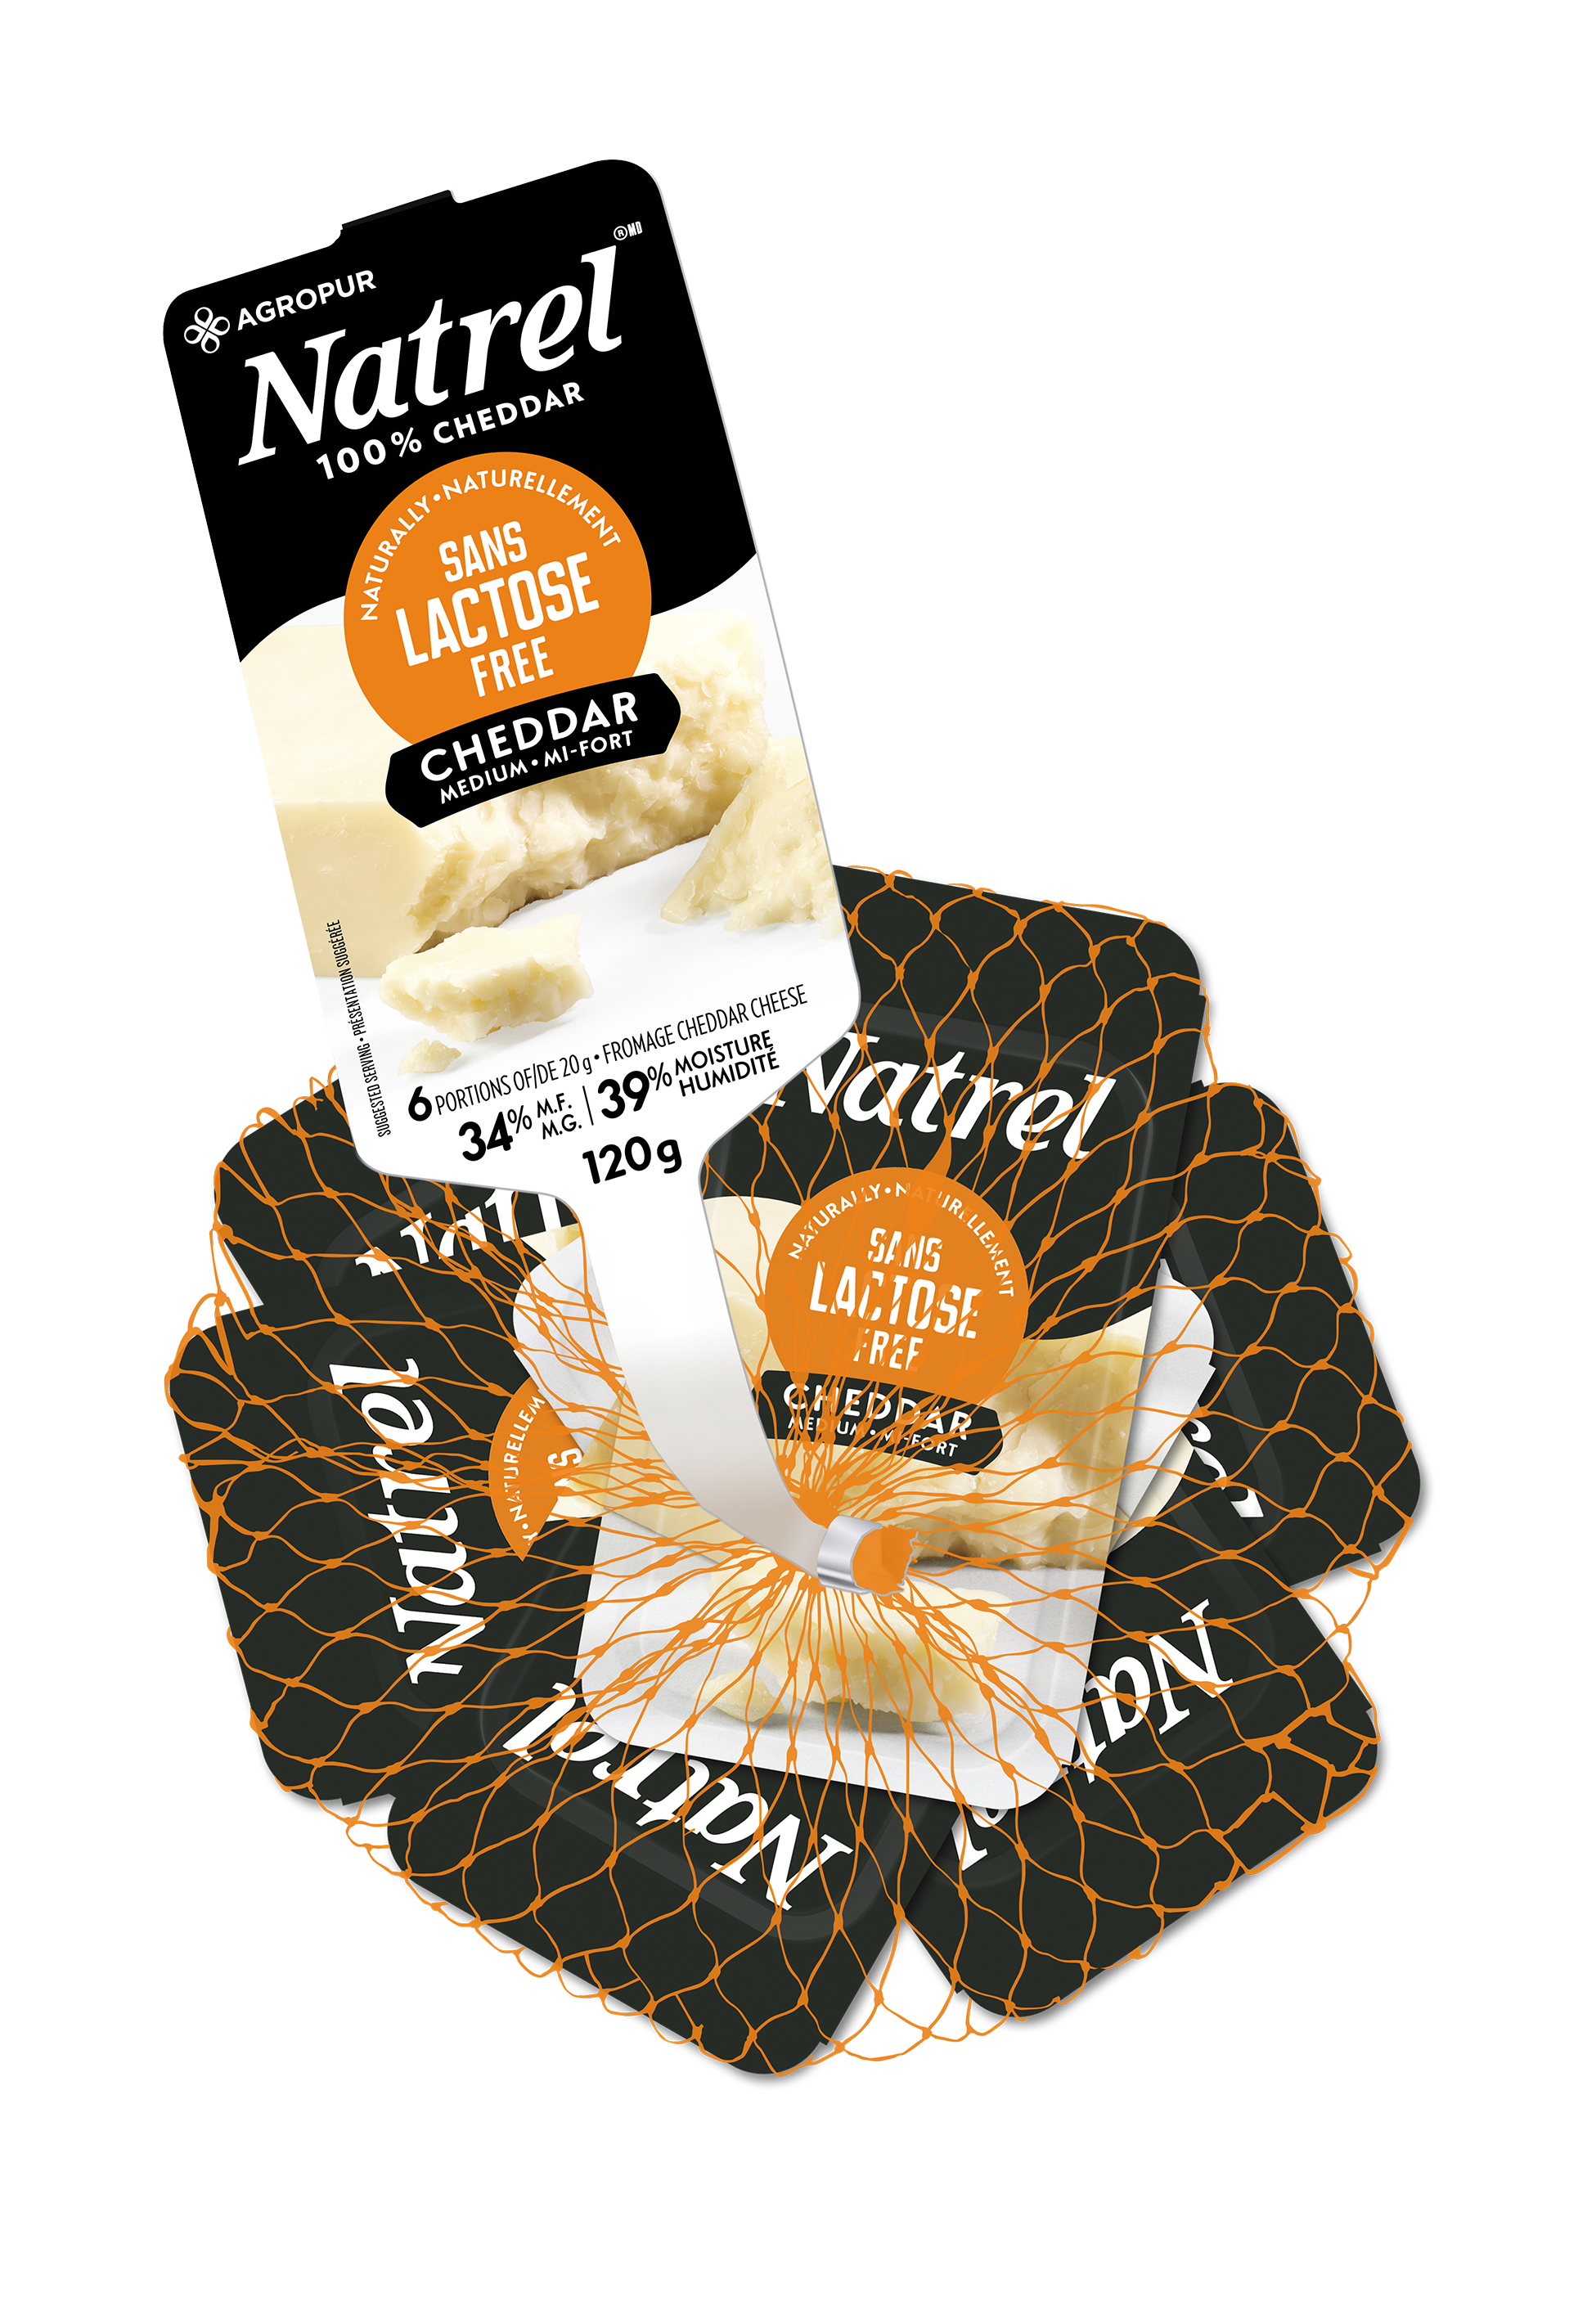 Naturally Lactose Free Medium Cheddar Cheese